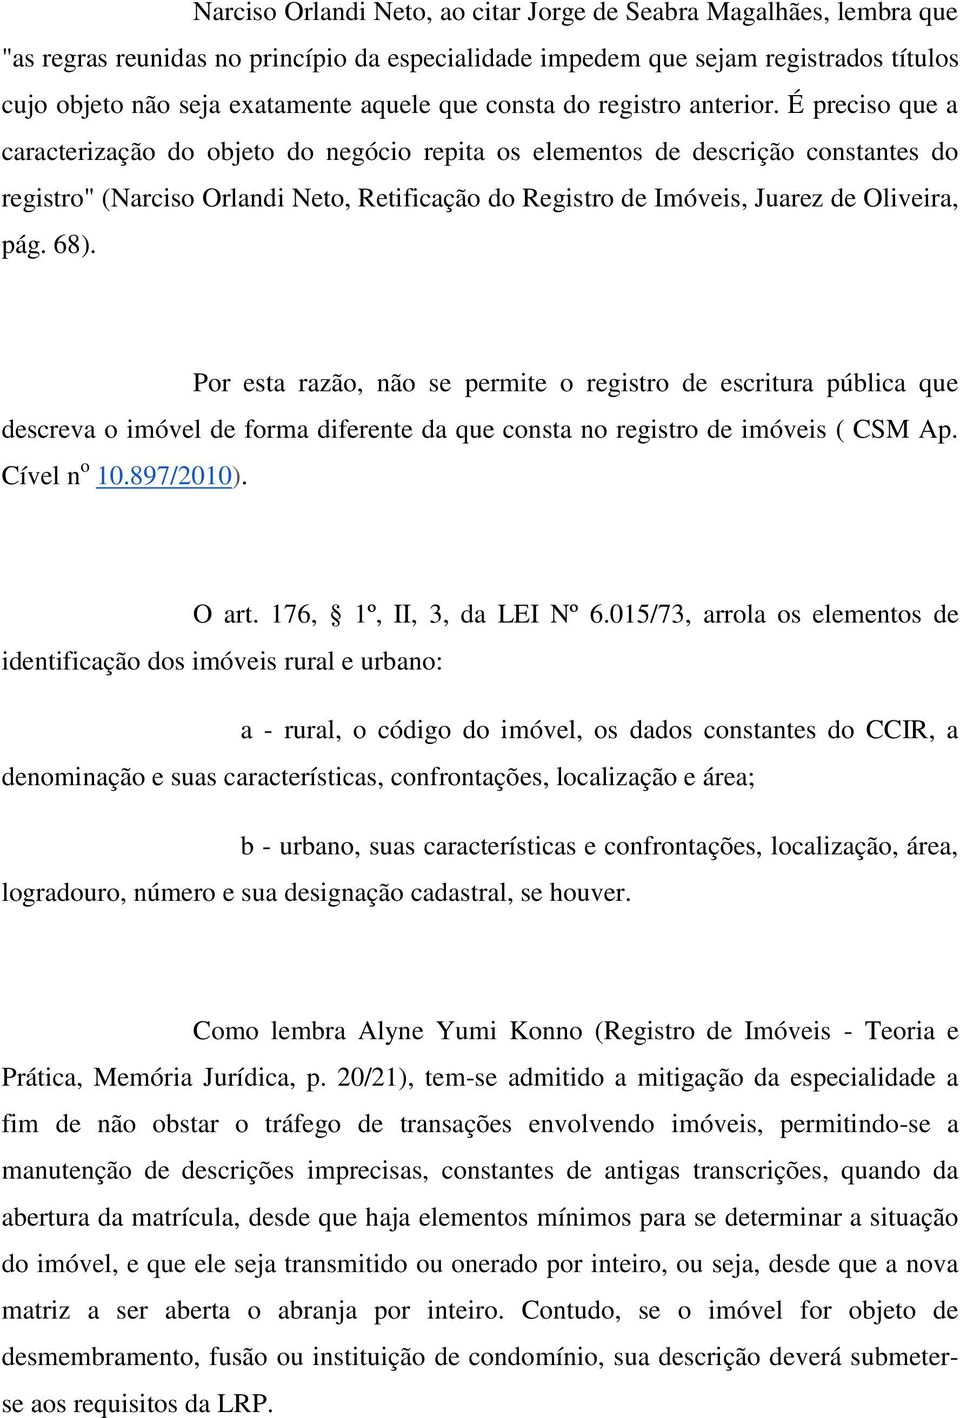 É preciso que a caracterização do objeto do negócio repita os elementos de descrição constantes do registro" (Narciso Orlandi Neto, Retificação do Registro de Imóveis, Juarez de Oliveira, pág. 68).